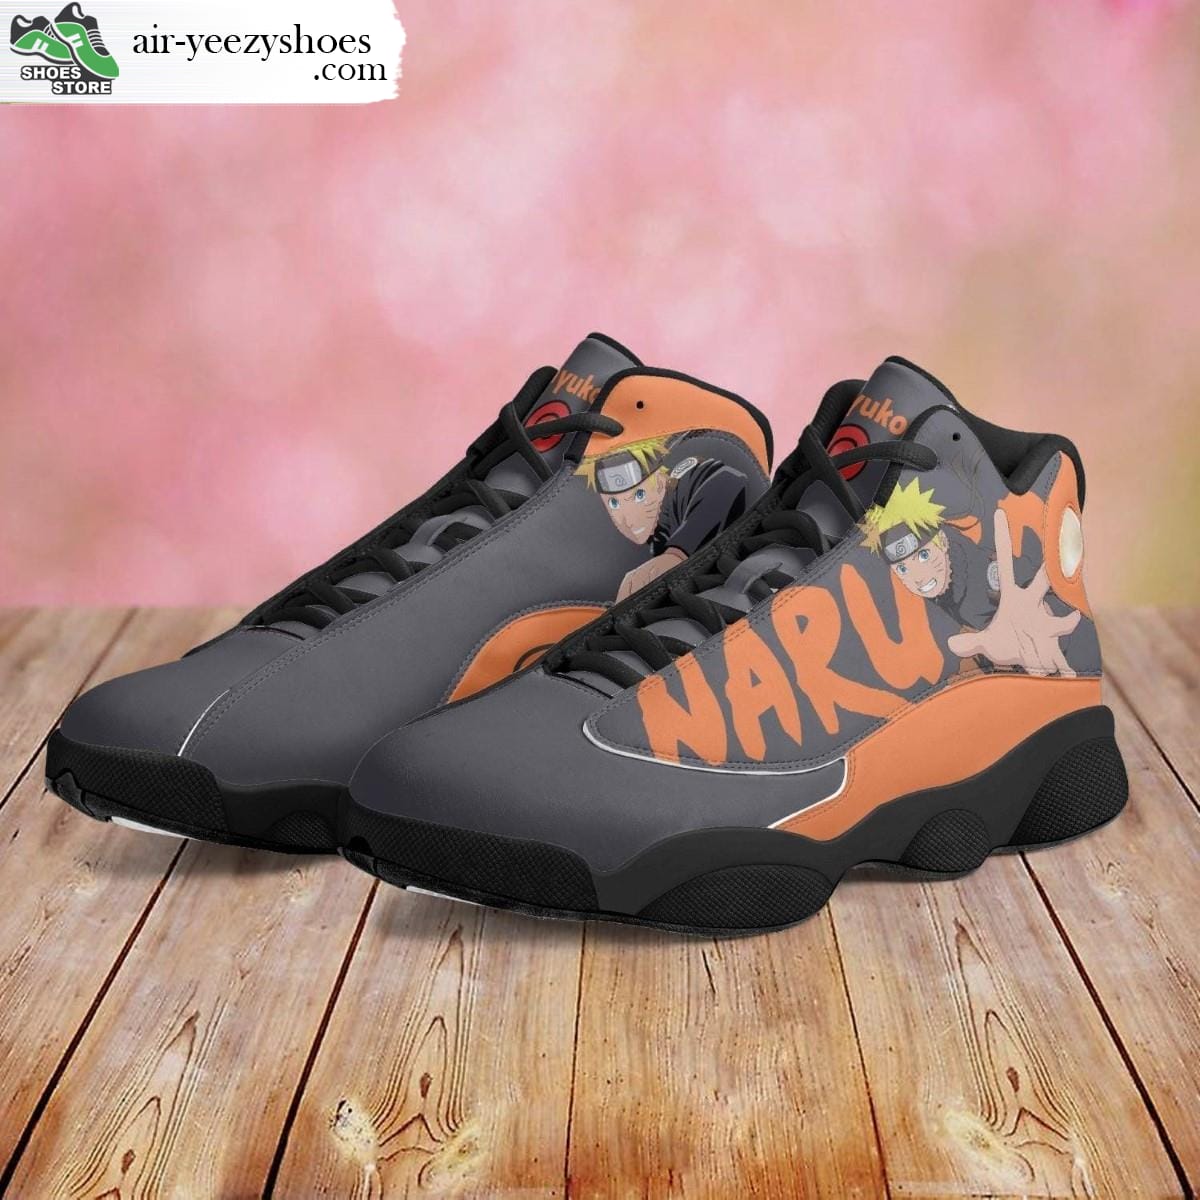 Naruto Uzumaki Jordan 13 Shoes, Naruto Anime Gift